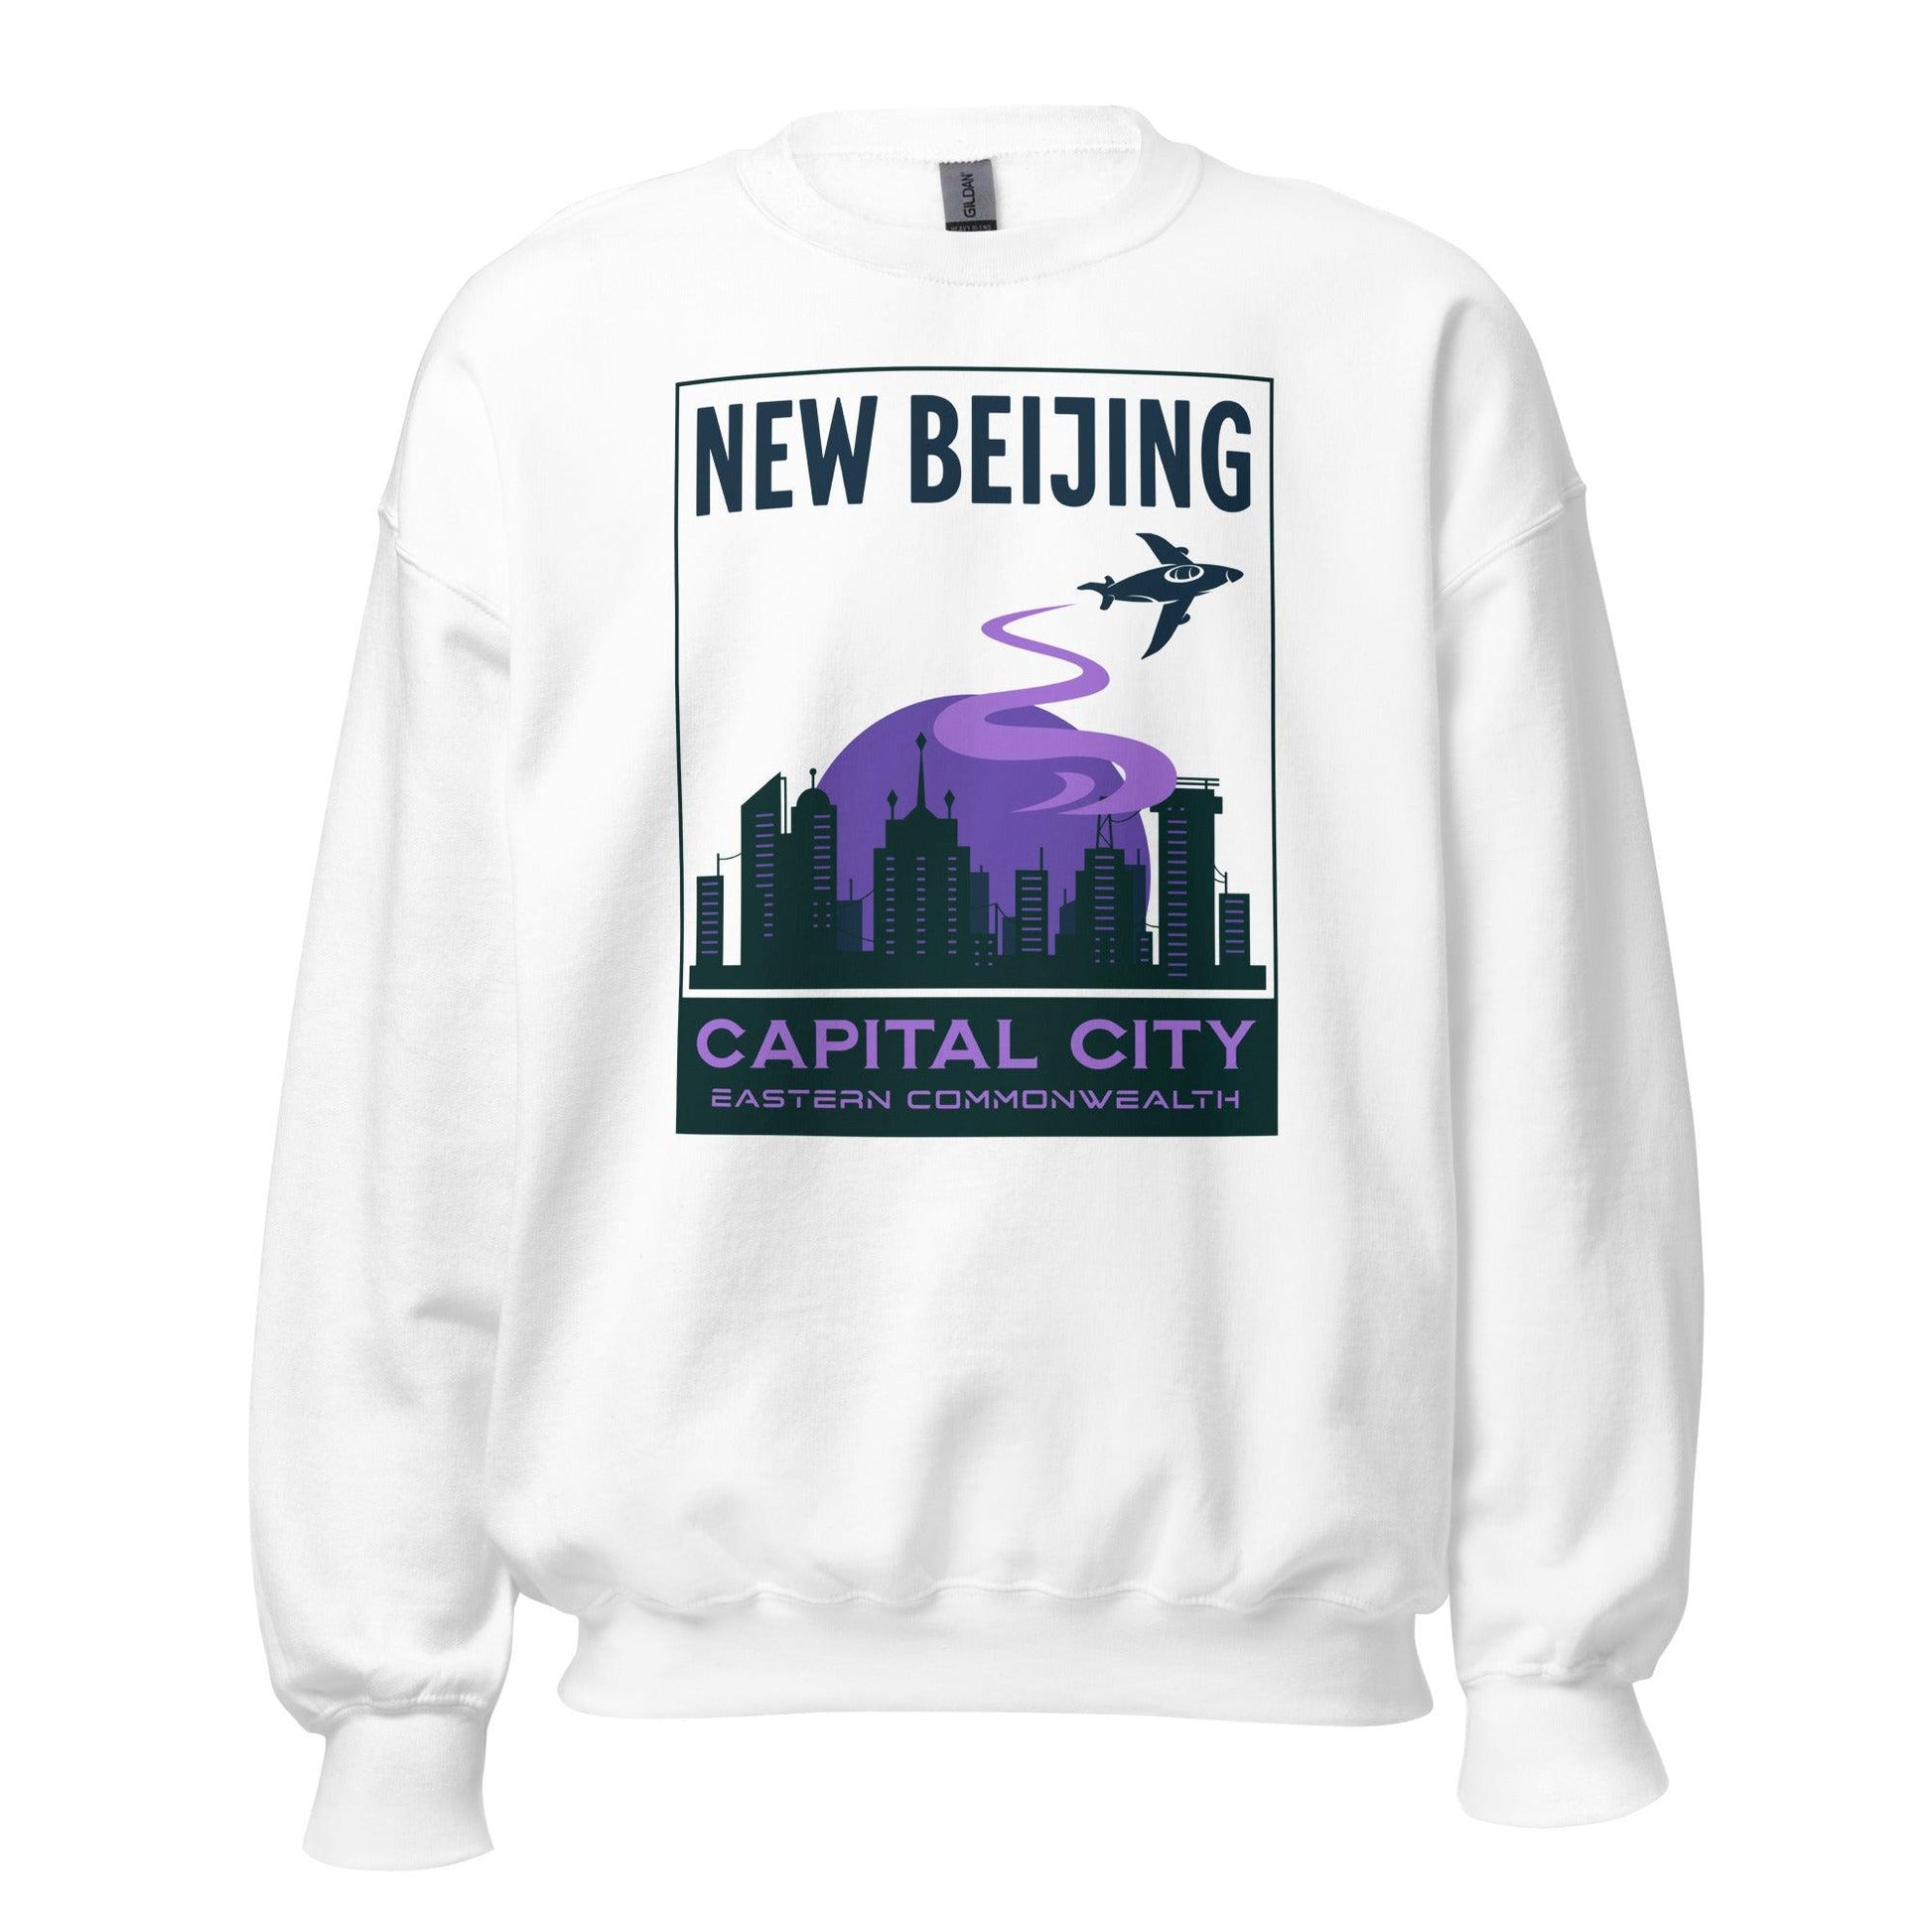 New Beijing Sweatshirt - The Bean Workshop - marissa meyer, sweatshirt, tlc